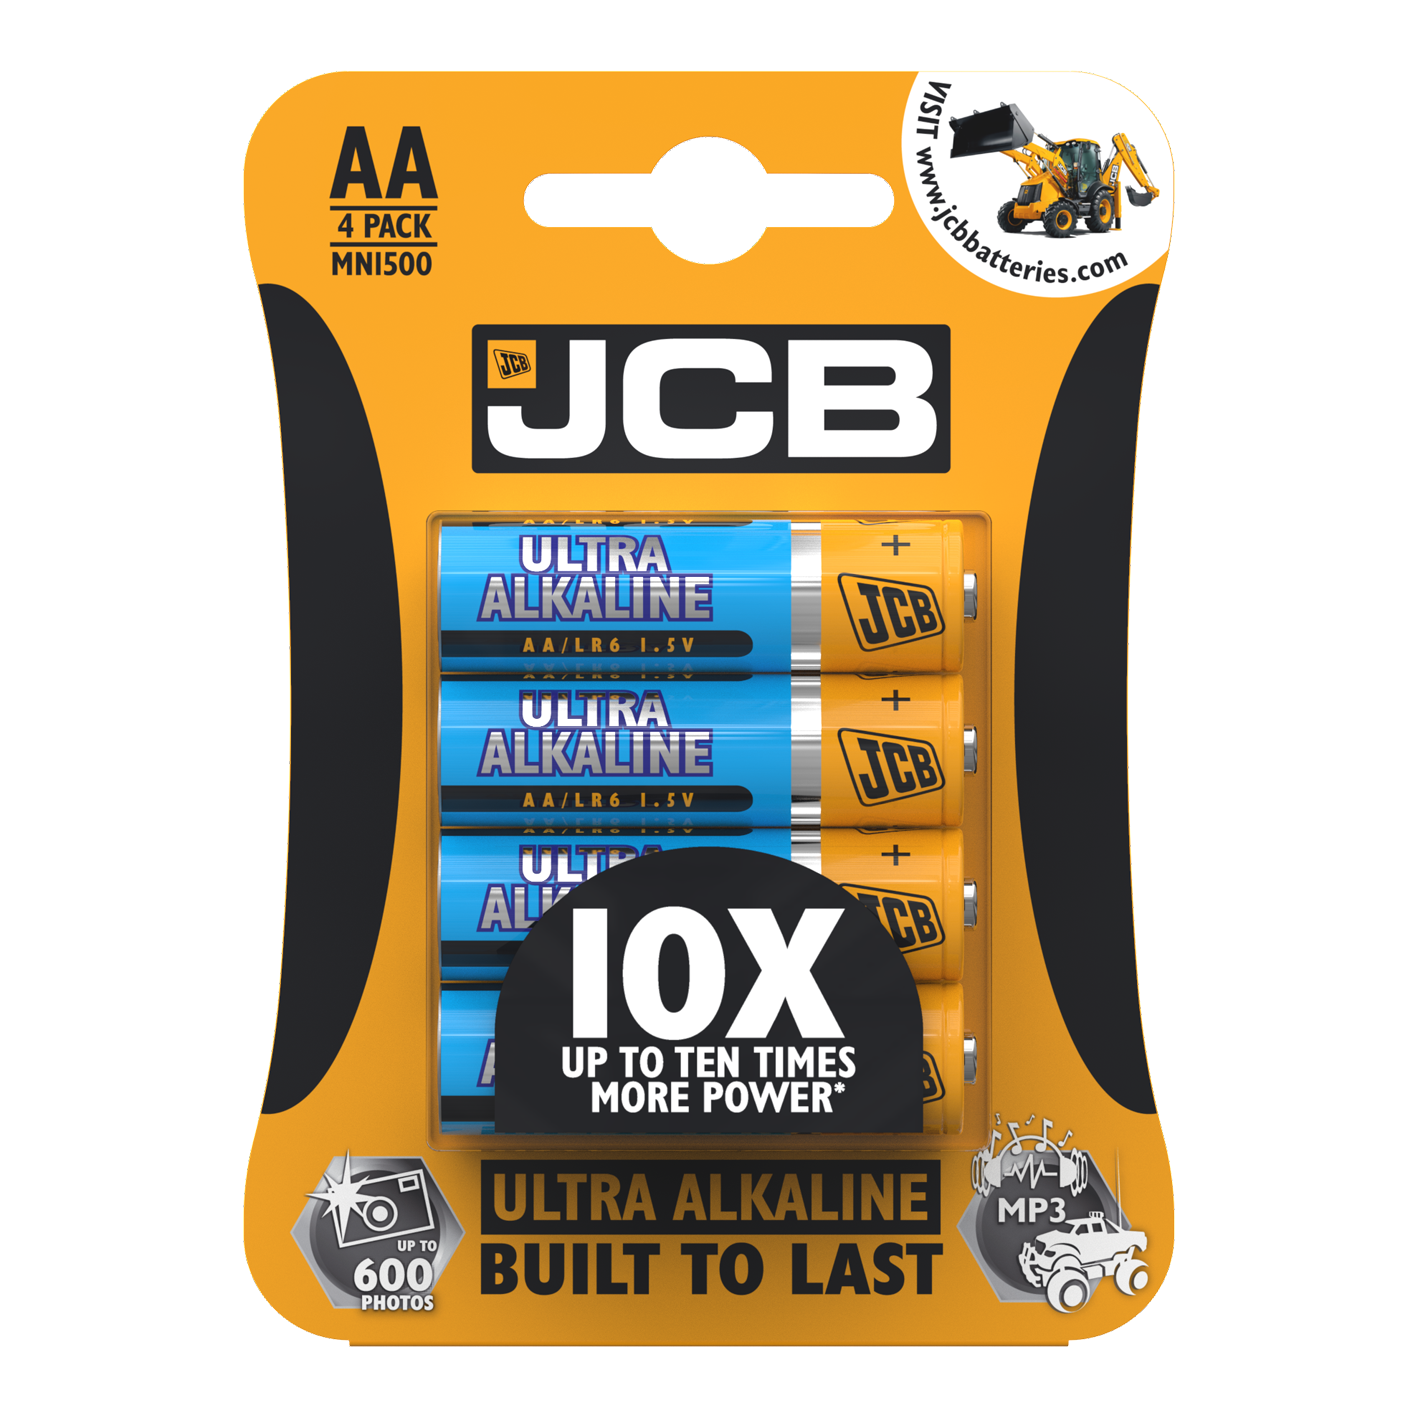 JCB AA Ultra Alkaline, Pack of 4